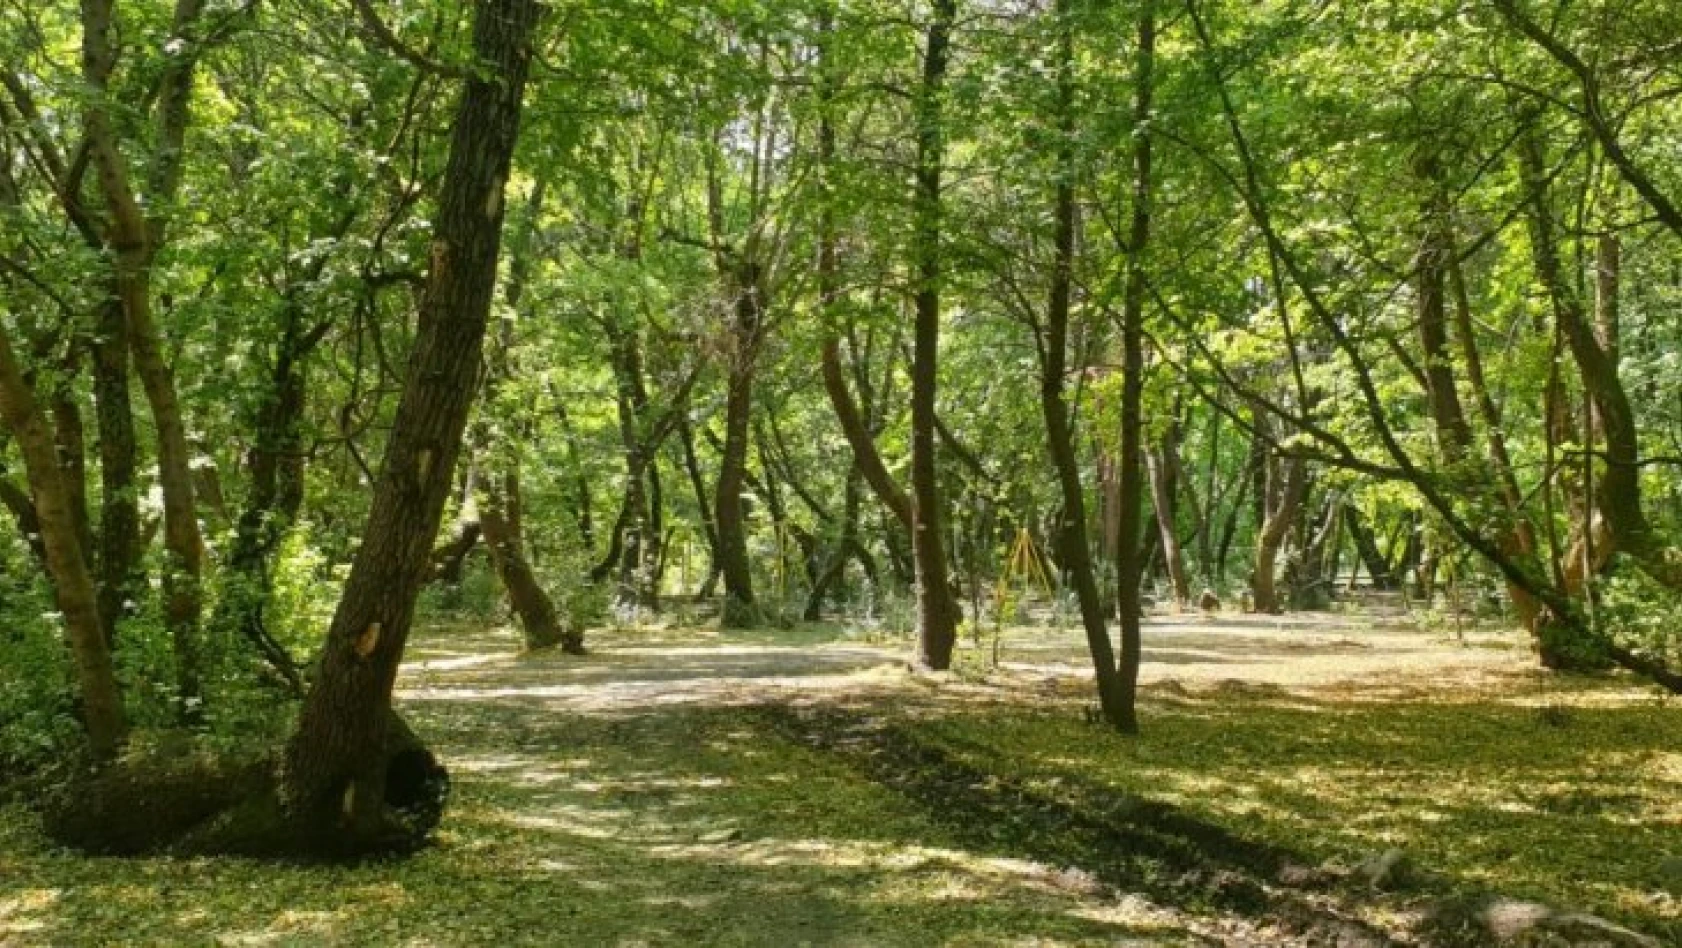 Kocaeli'de 31 Ağustos'a kadar ormanlık alanlara girmek yasaklandı